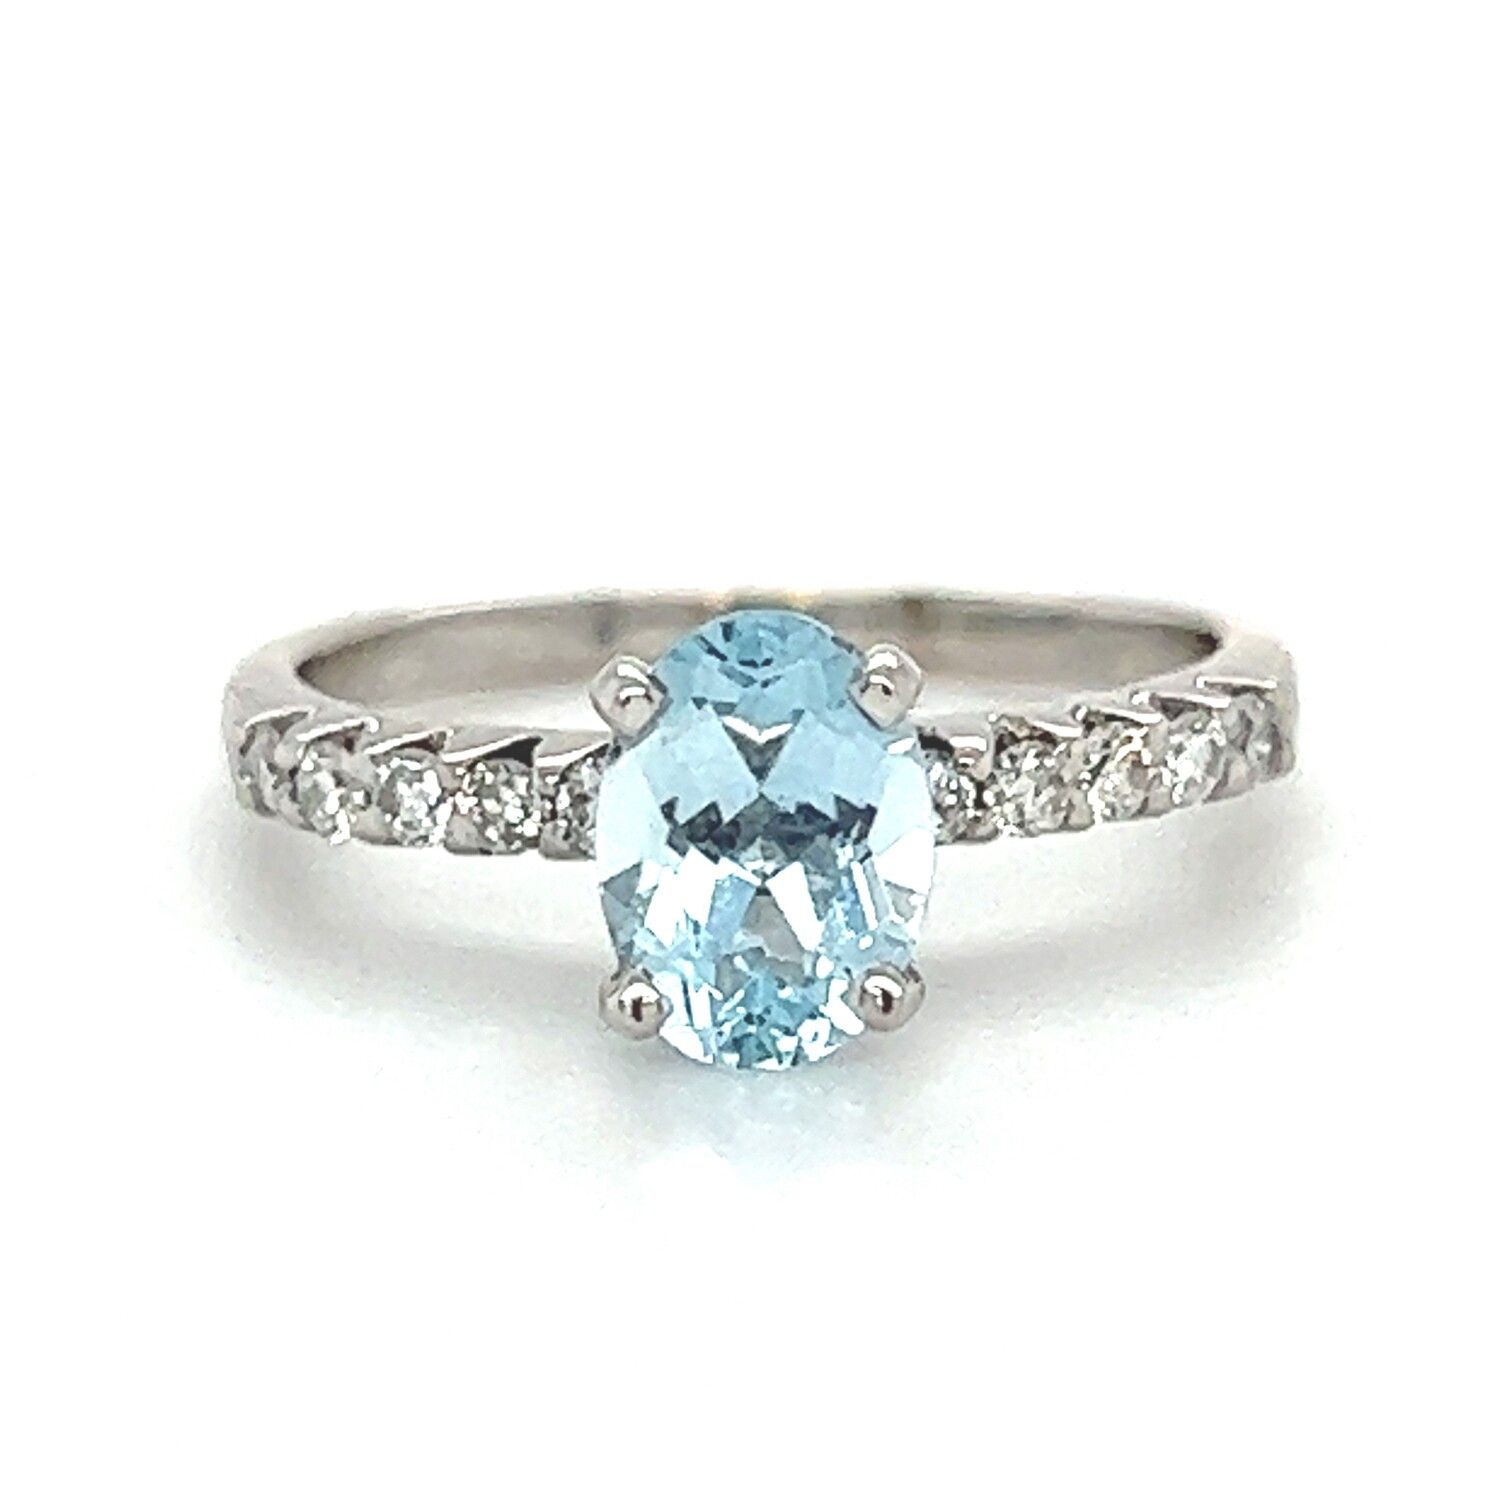 Aqua & Diamond Ring in 18k White Gold